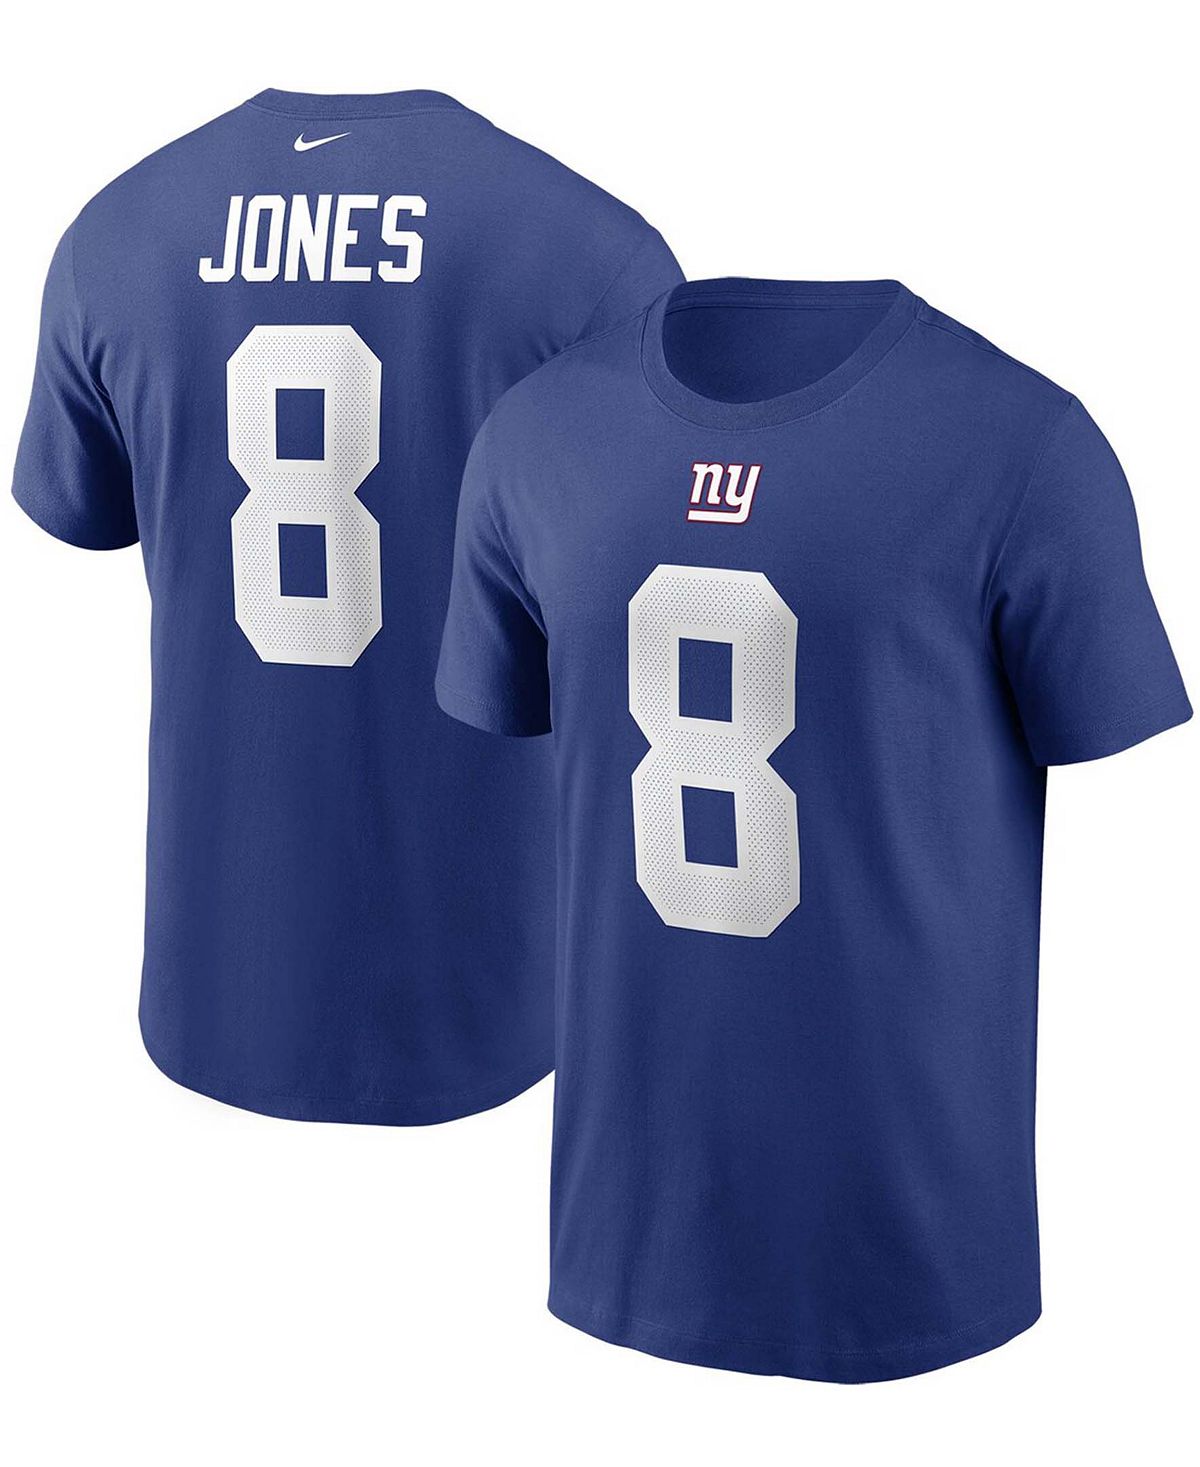 Мужская футболка с именем и номером Daniel Jones Royal New York Giants Nike женская блузка в стиле милитари jones new york мульти